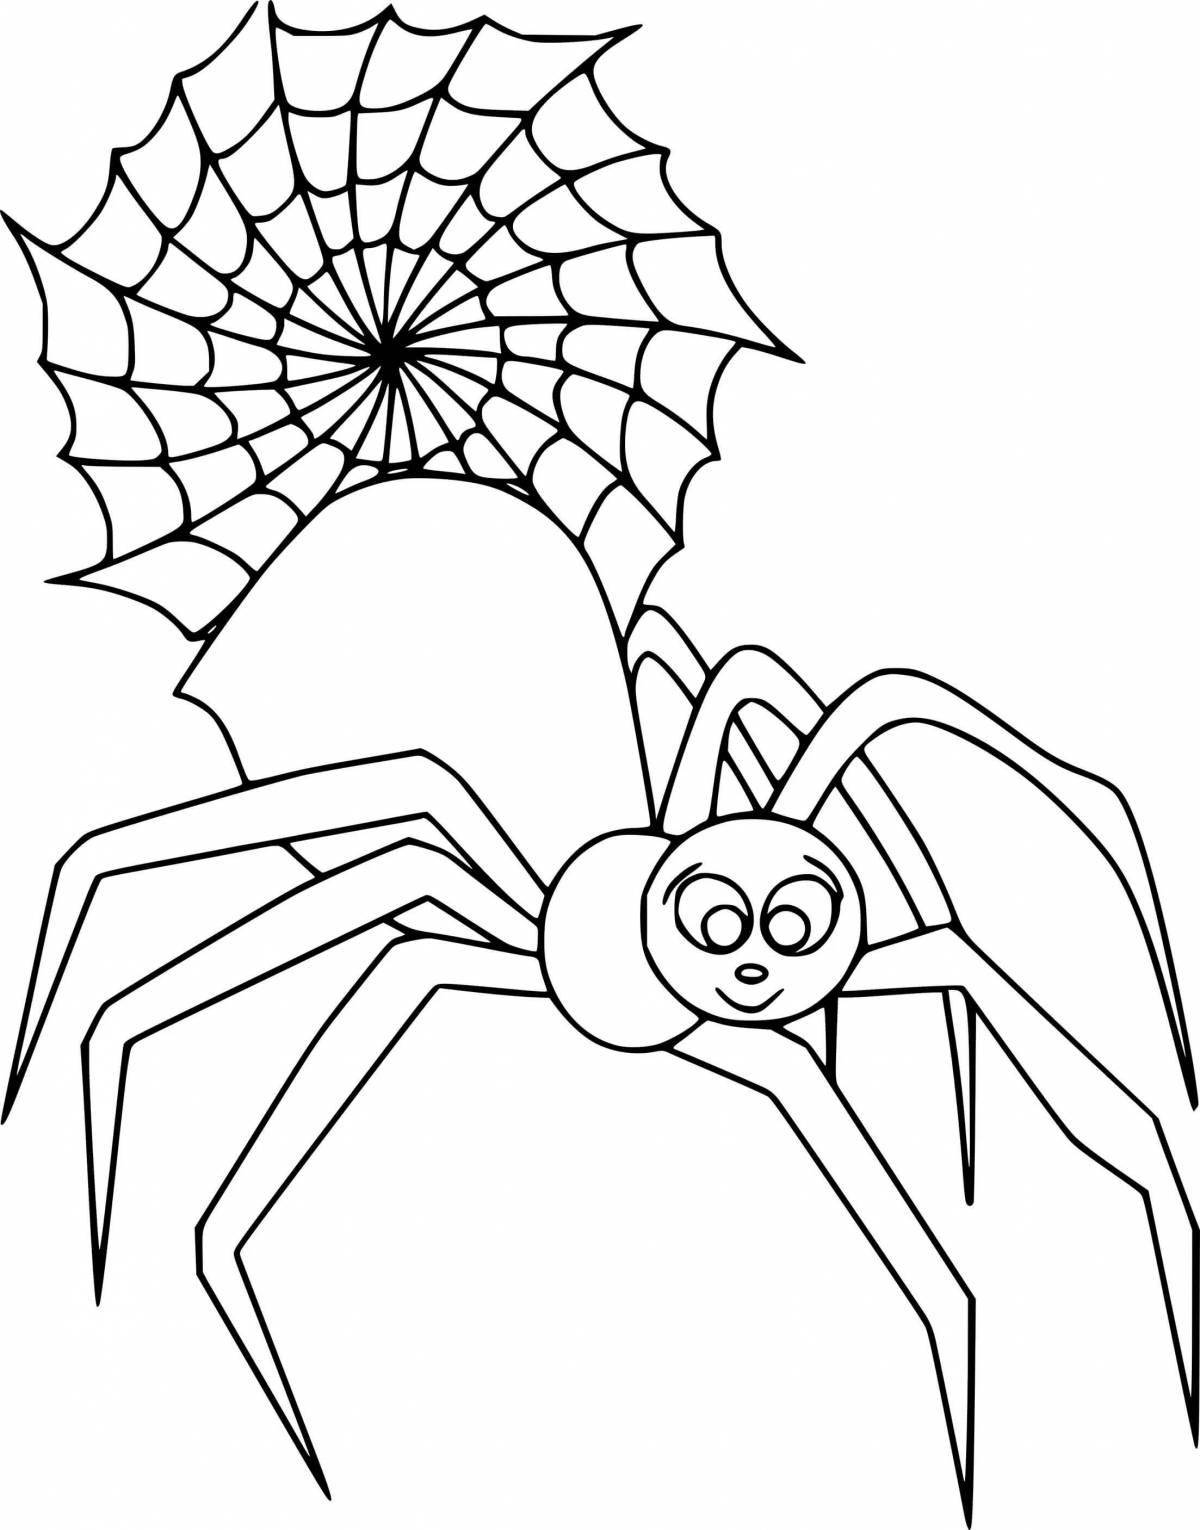 Fun coloring cartoon spider